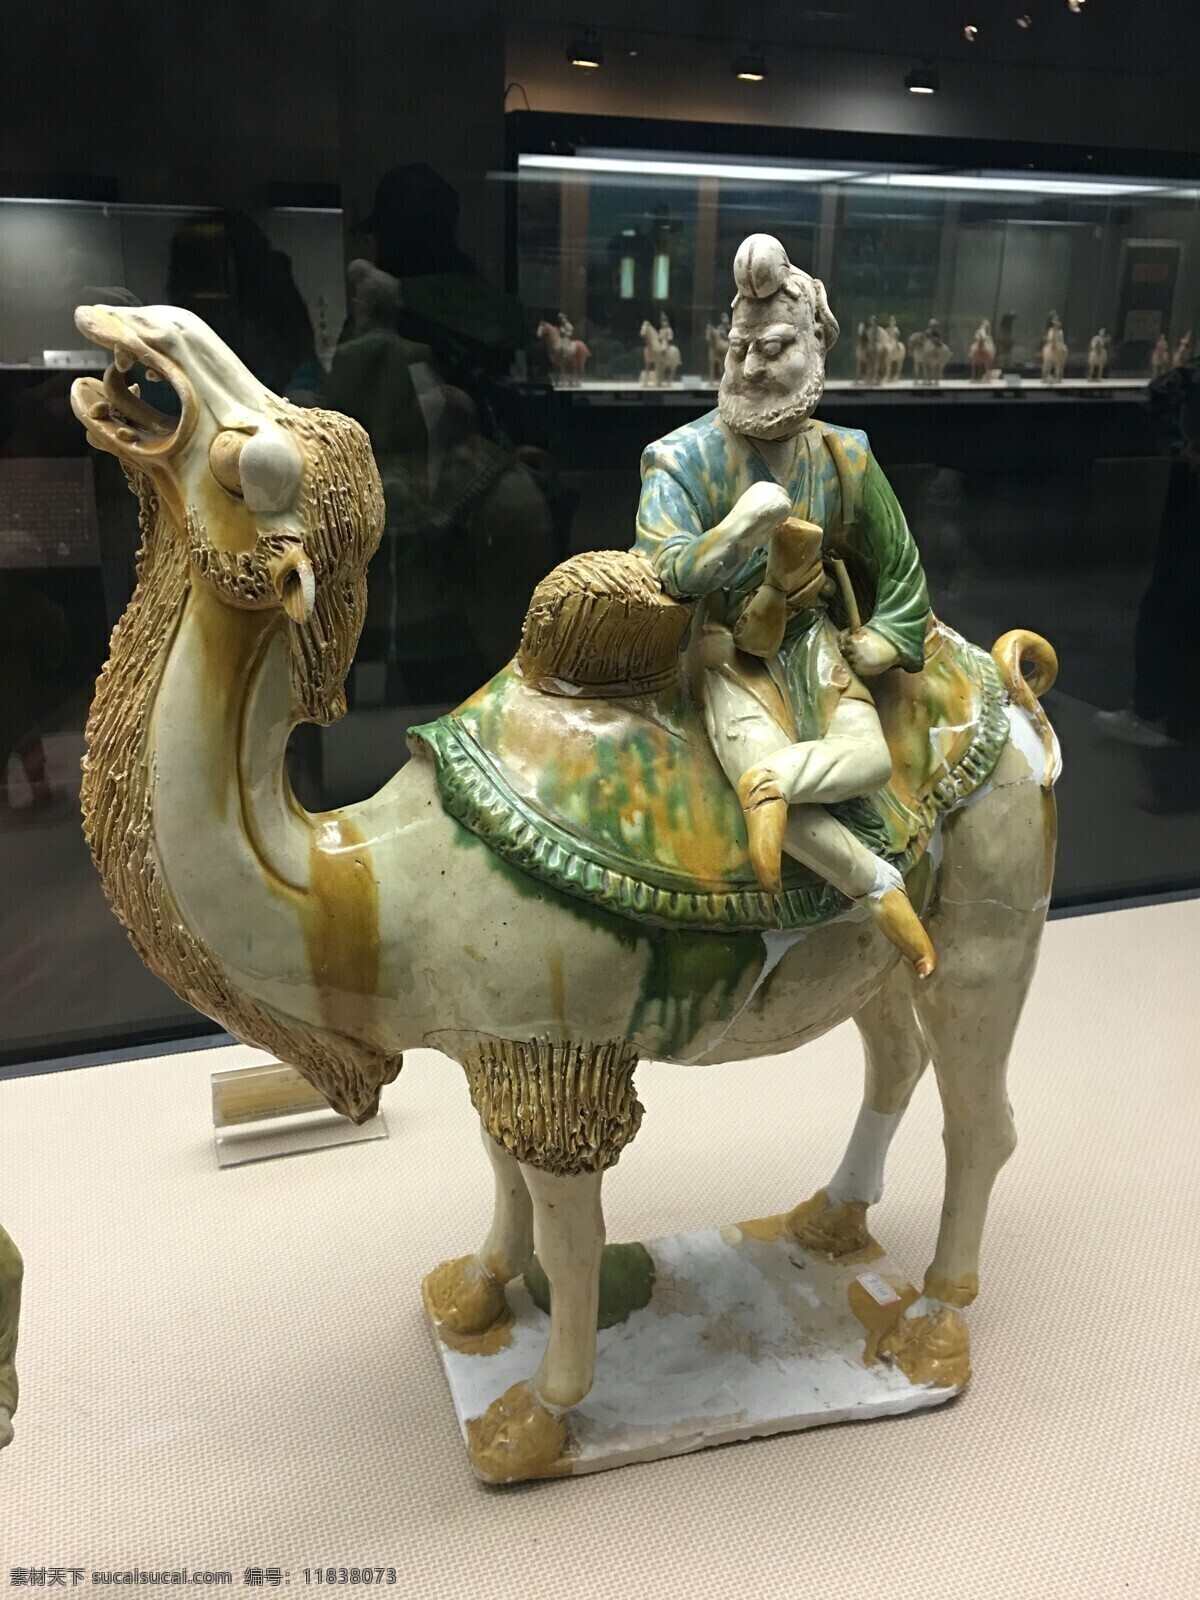 三彩骆驼 唐三彩 跪驼 艺术品 三彩胡人 胡人骑驼俑 古玩 文化艺术 传统文化